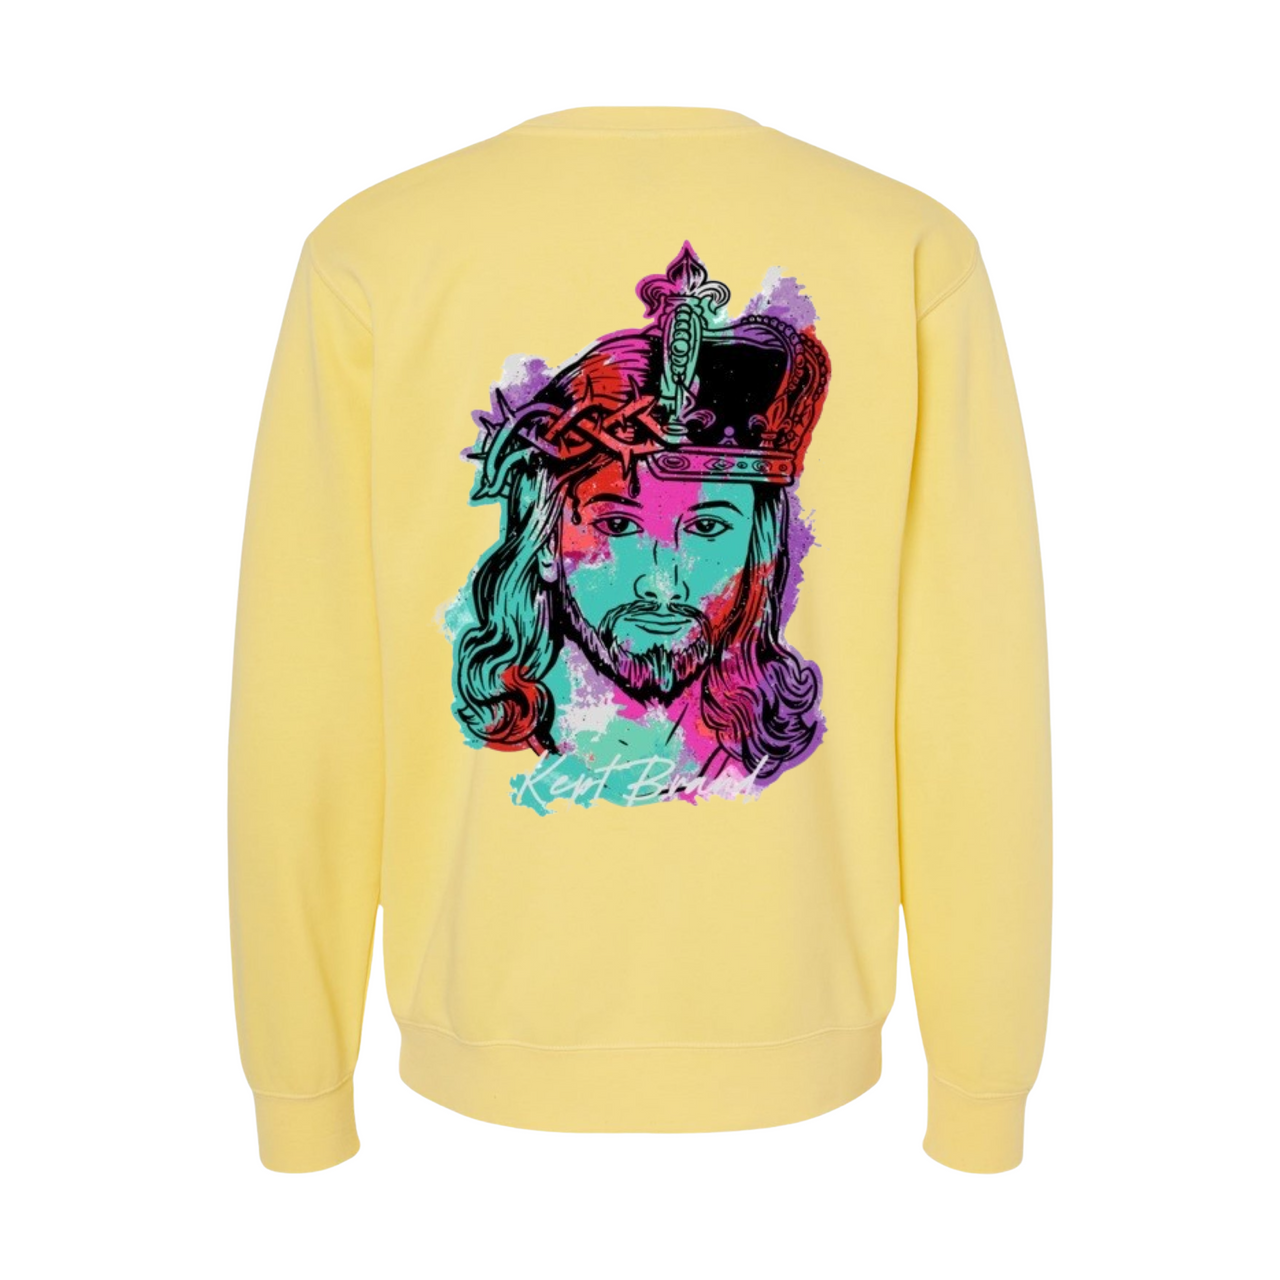 Reborn King 2.0 - Pigment-Dyed Sweatshirt